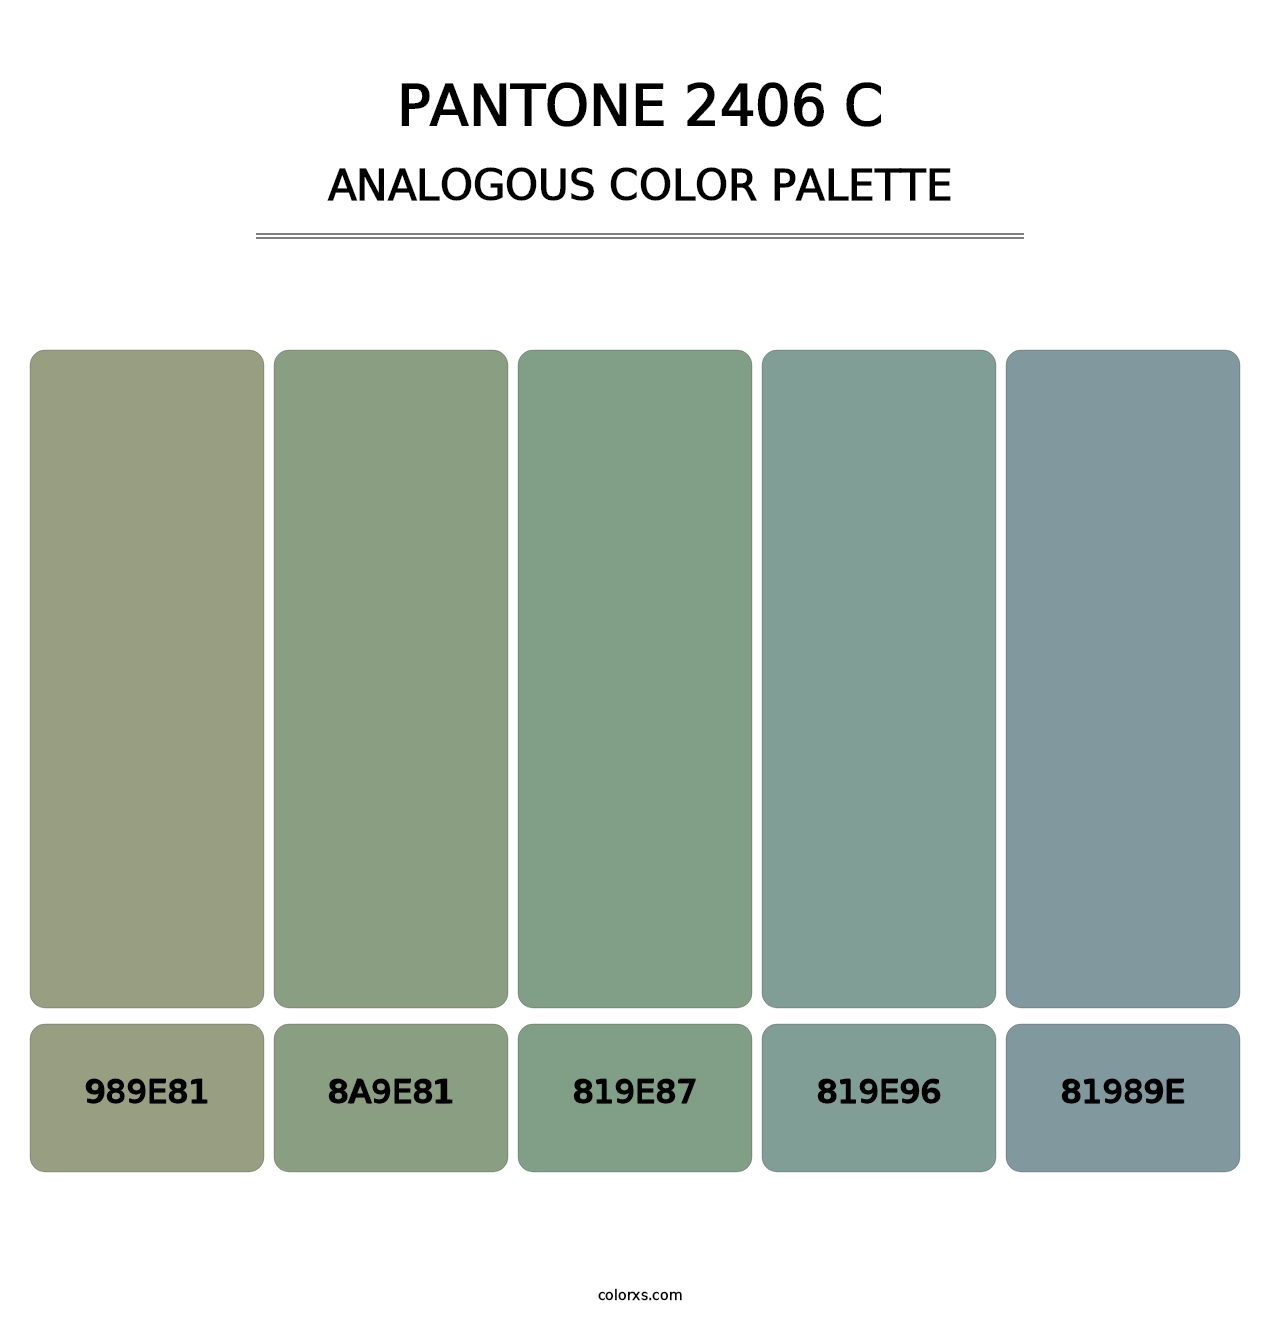 PANTONE 2406 C - Analogous Color Palette